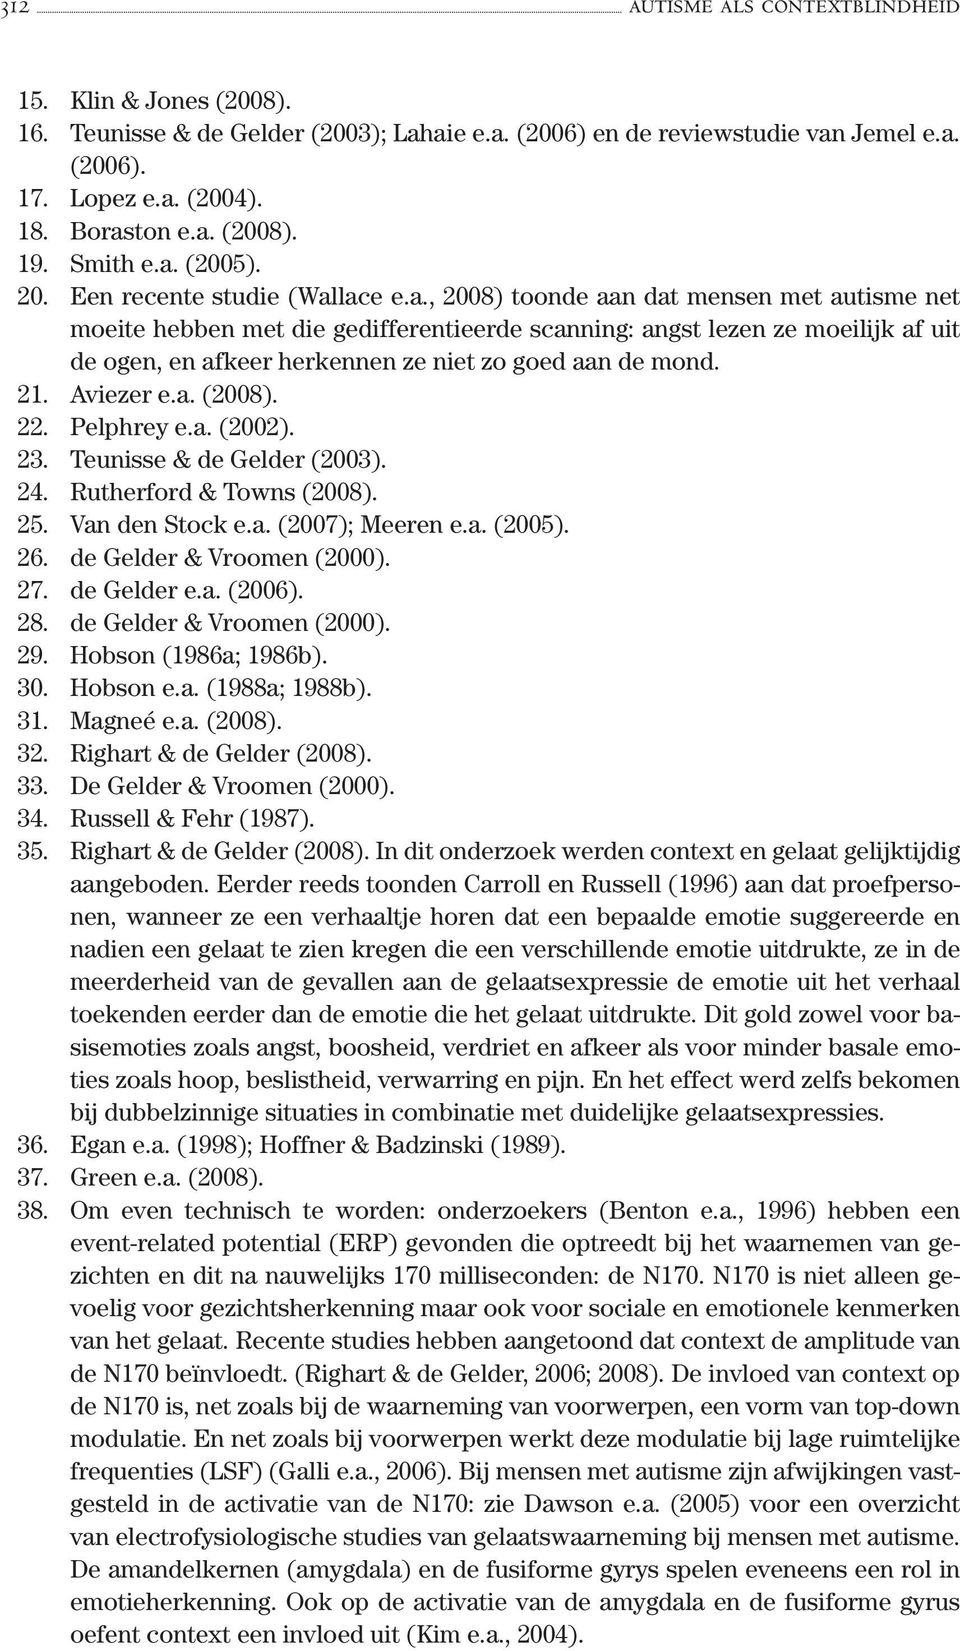 21. Aviezer e.a. (2008). 22. Pelphrey e.a. (2002). 23. Teunisse & de Gelder (2003). 24. Rutherford & Towns (2008). 25. Van den Stock e.a. (2007); Meeren e.a. (2005). 26. de Gelder & Vroomen (2000).